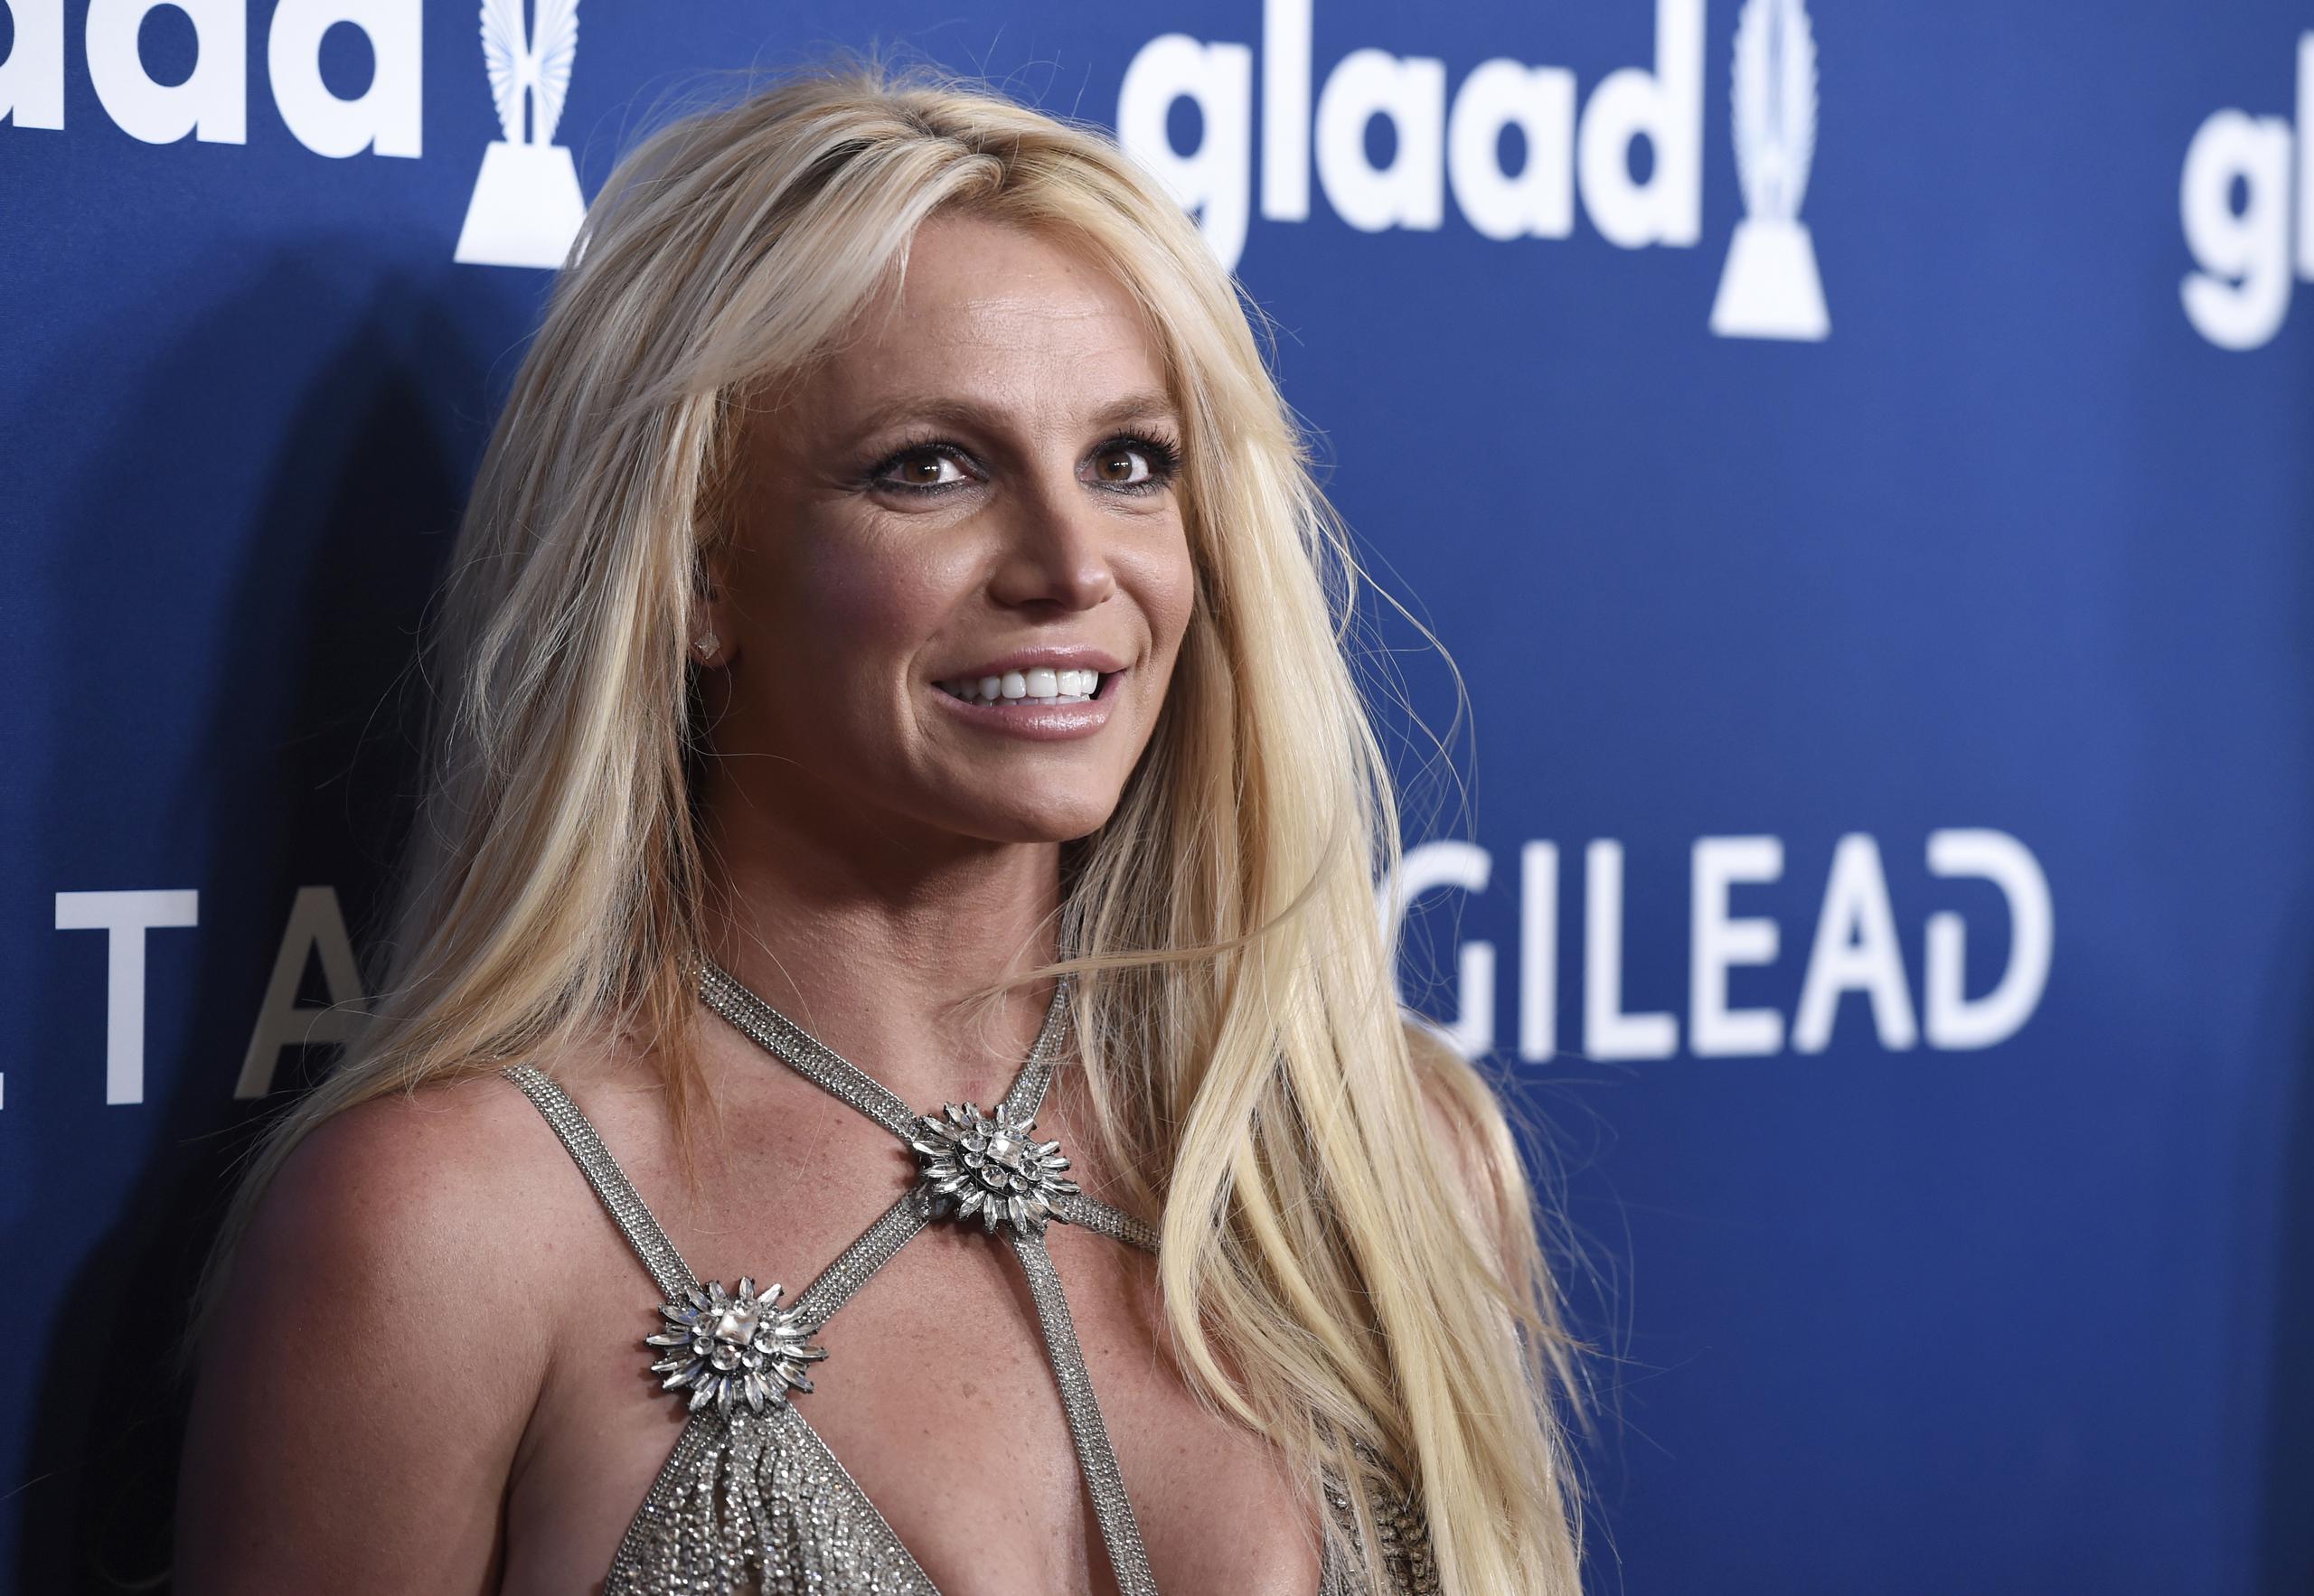 El miércoles en la noche, después de que se difundiera la noticia de su separación, Britney Spears publicó en Instagram que planeaba comprar un caballo, sin hacer ninguna mención de su estado civil.